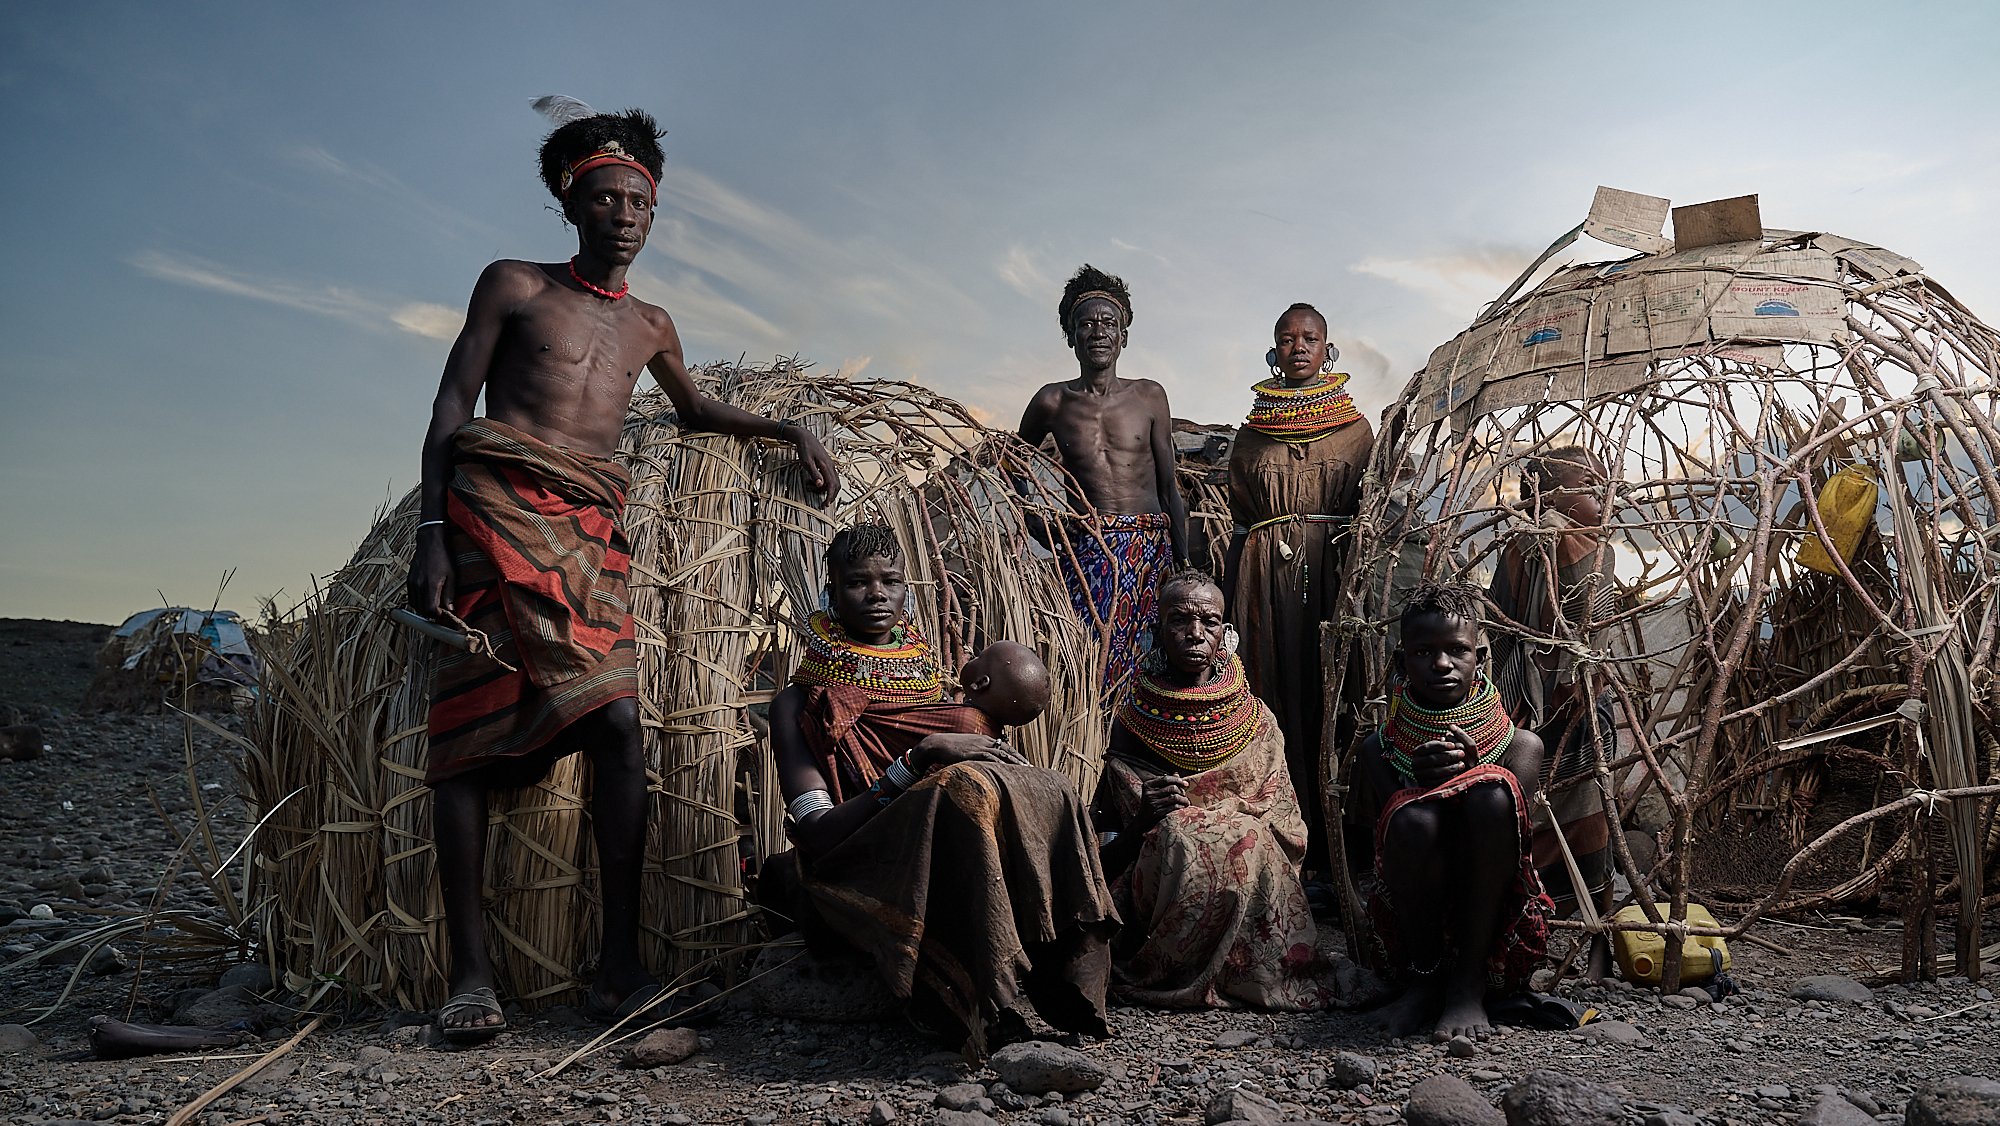 Extended Turkana family, village near Loyangalani, Lake Turkana